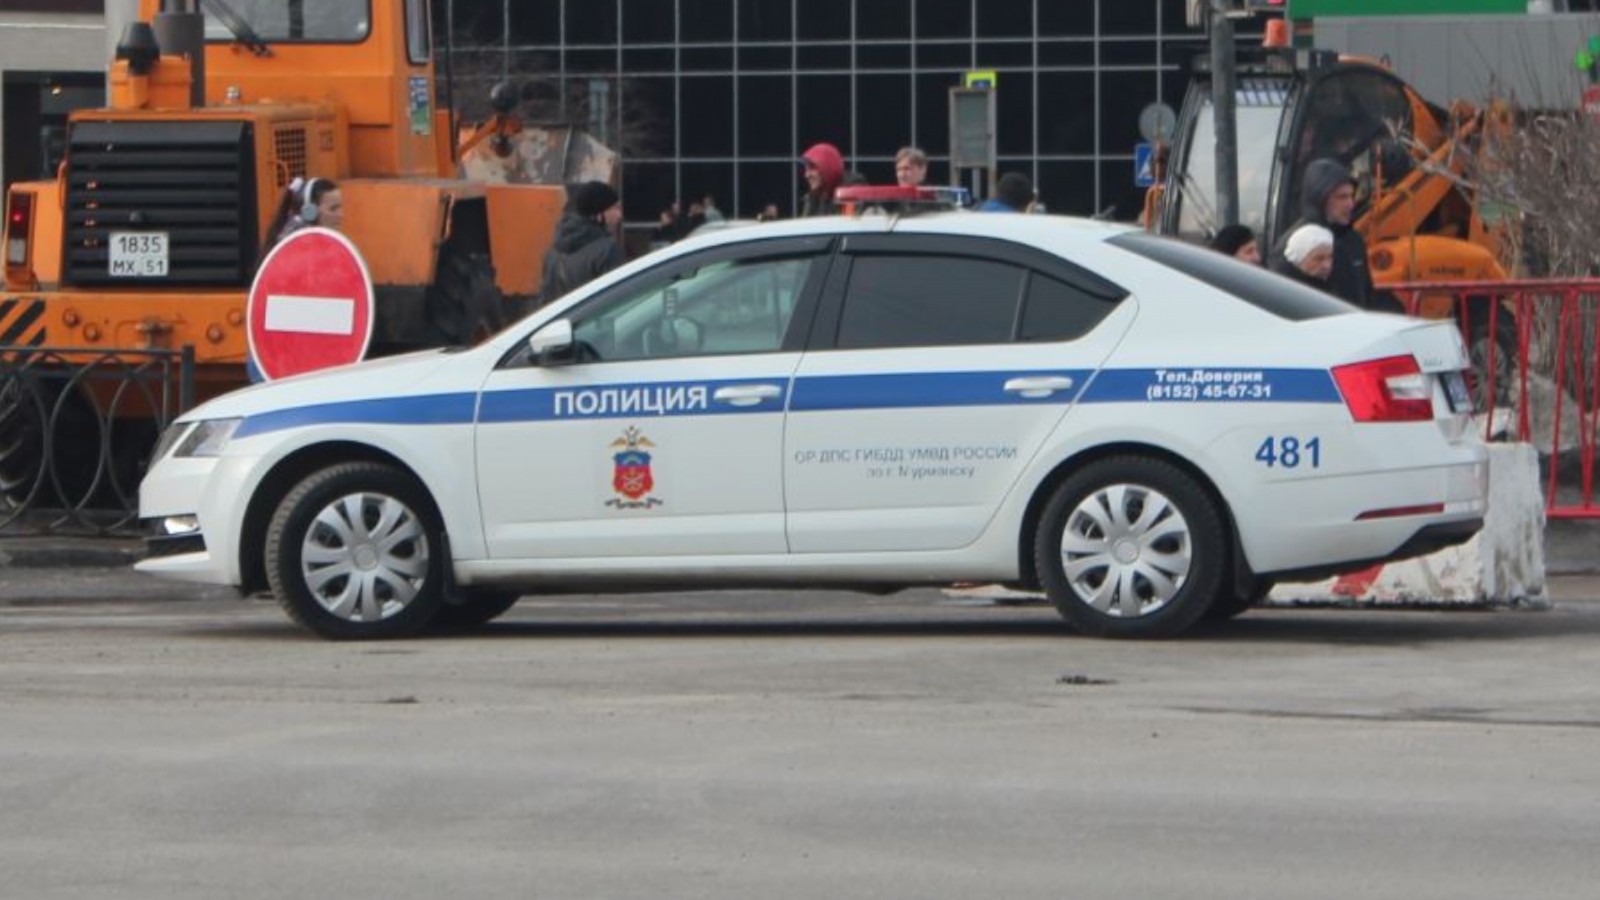 ГИБДД: В аварии на Свердлова пострадавших нет